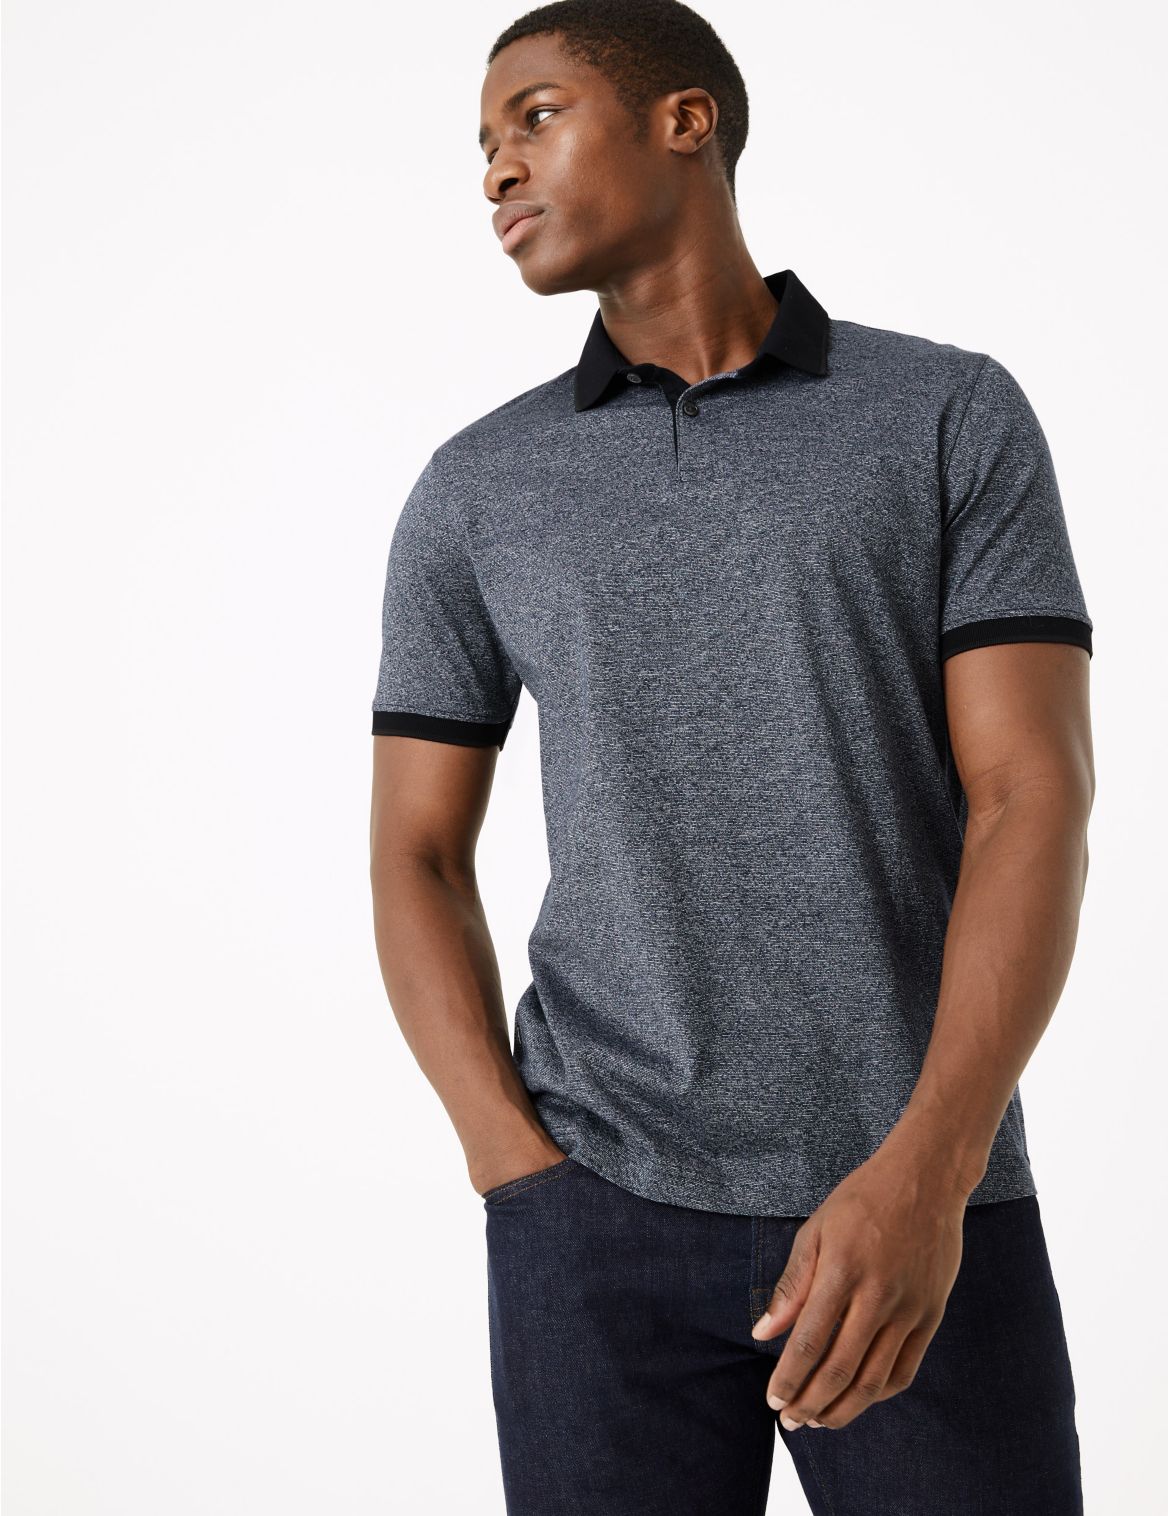 Premium Cotton Textured Polo Shirt navy